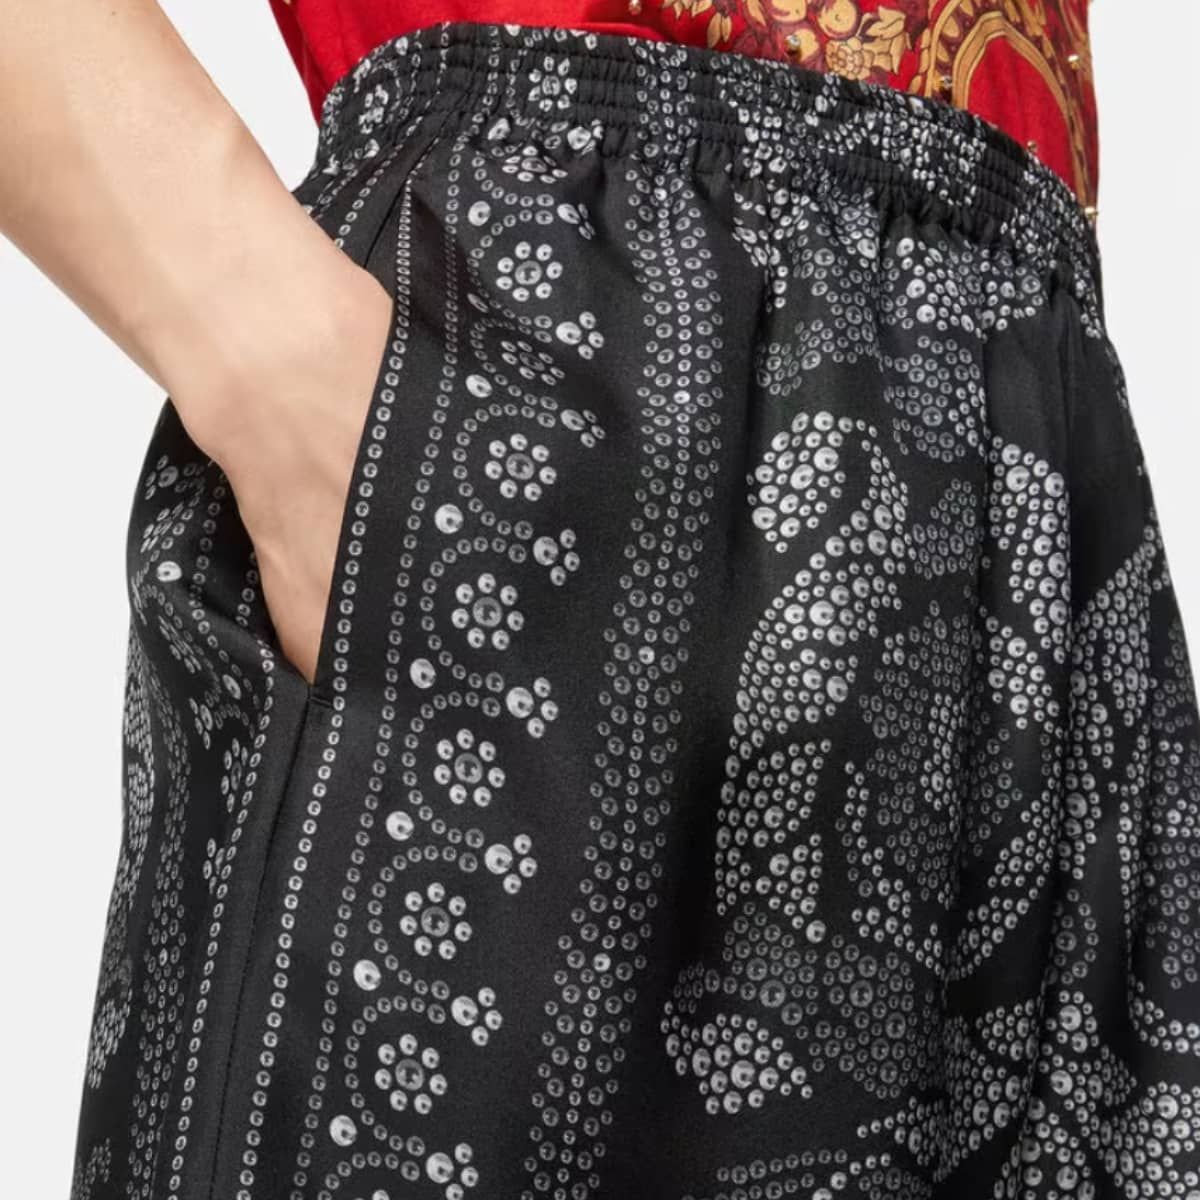 Barocco Silhouette Silk Shorts